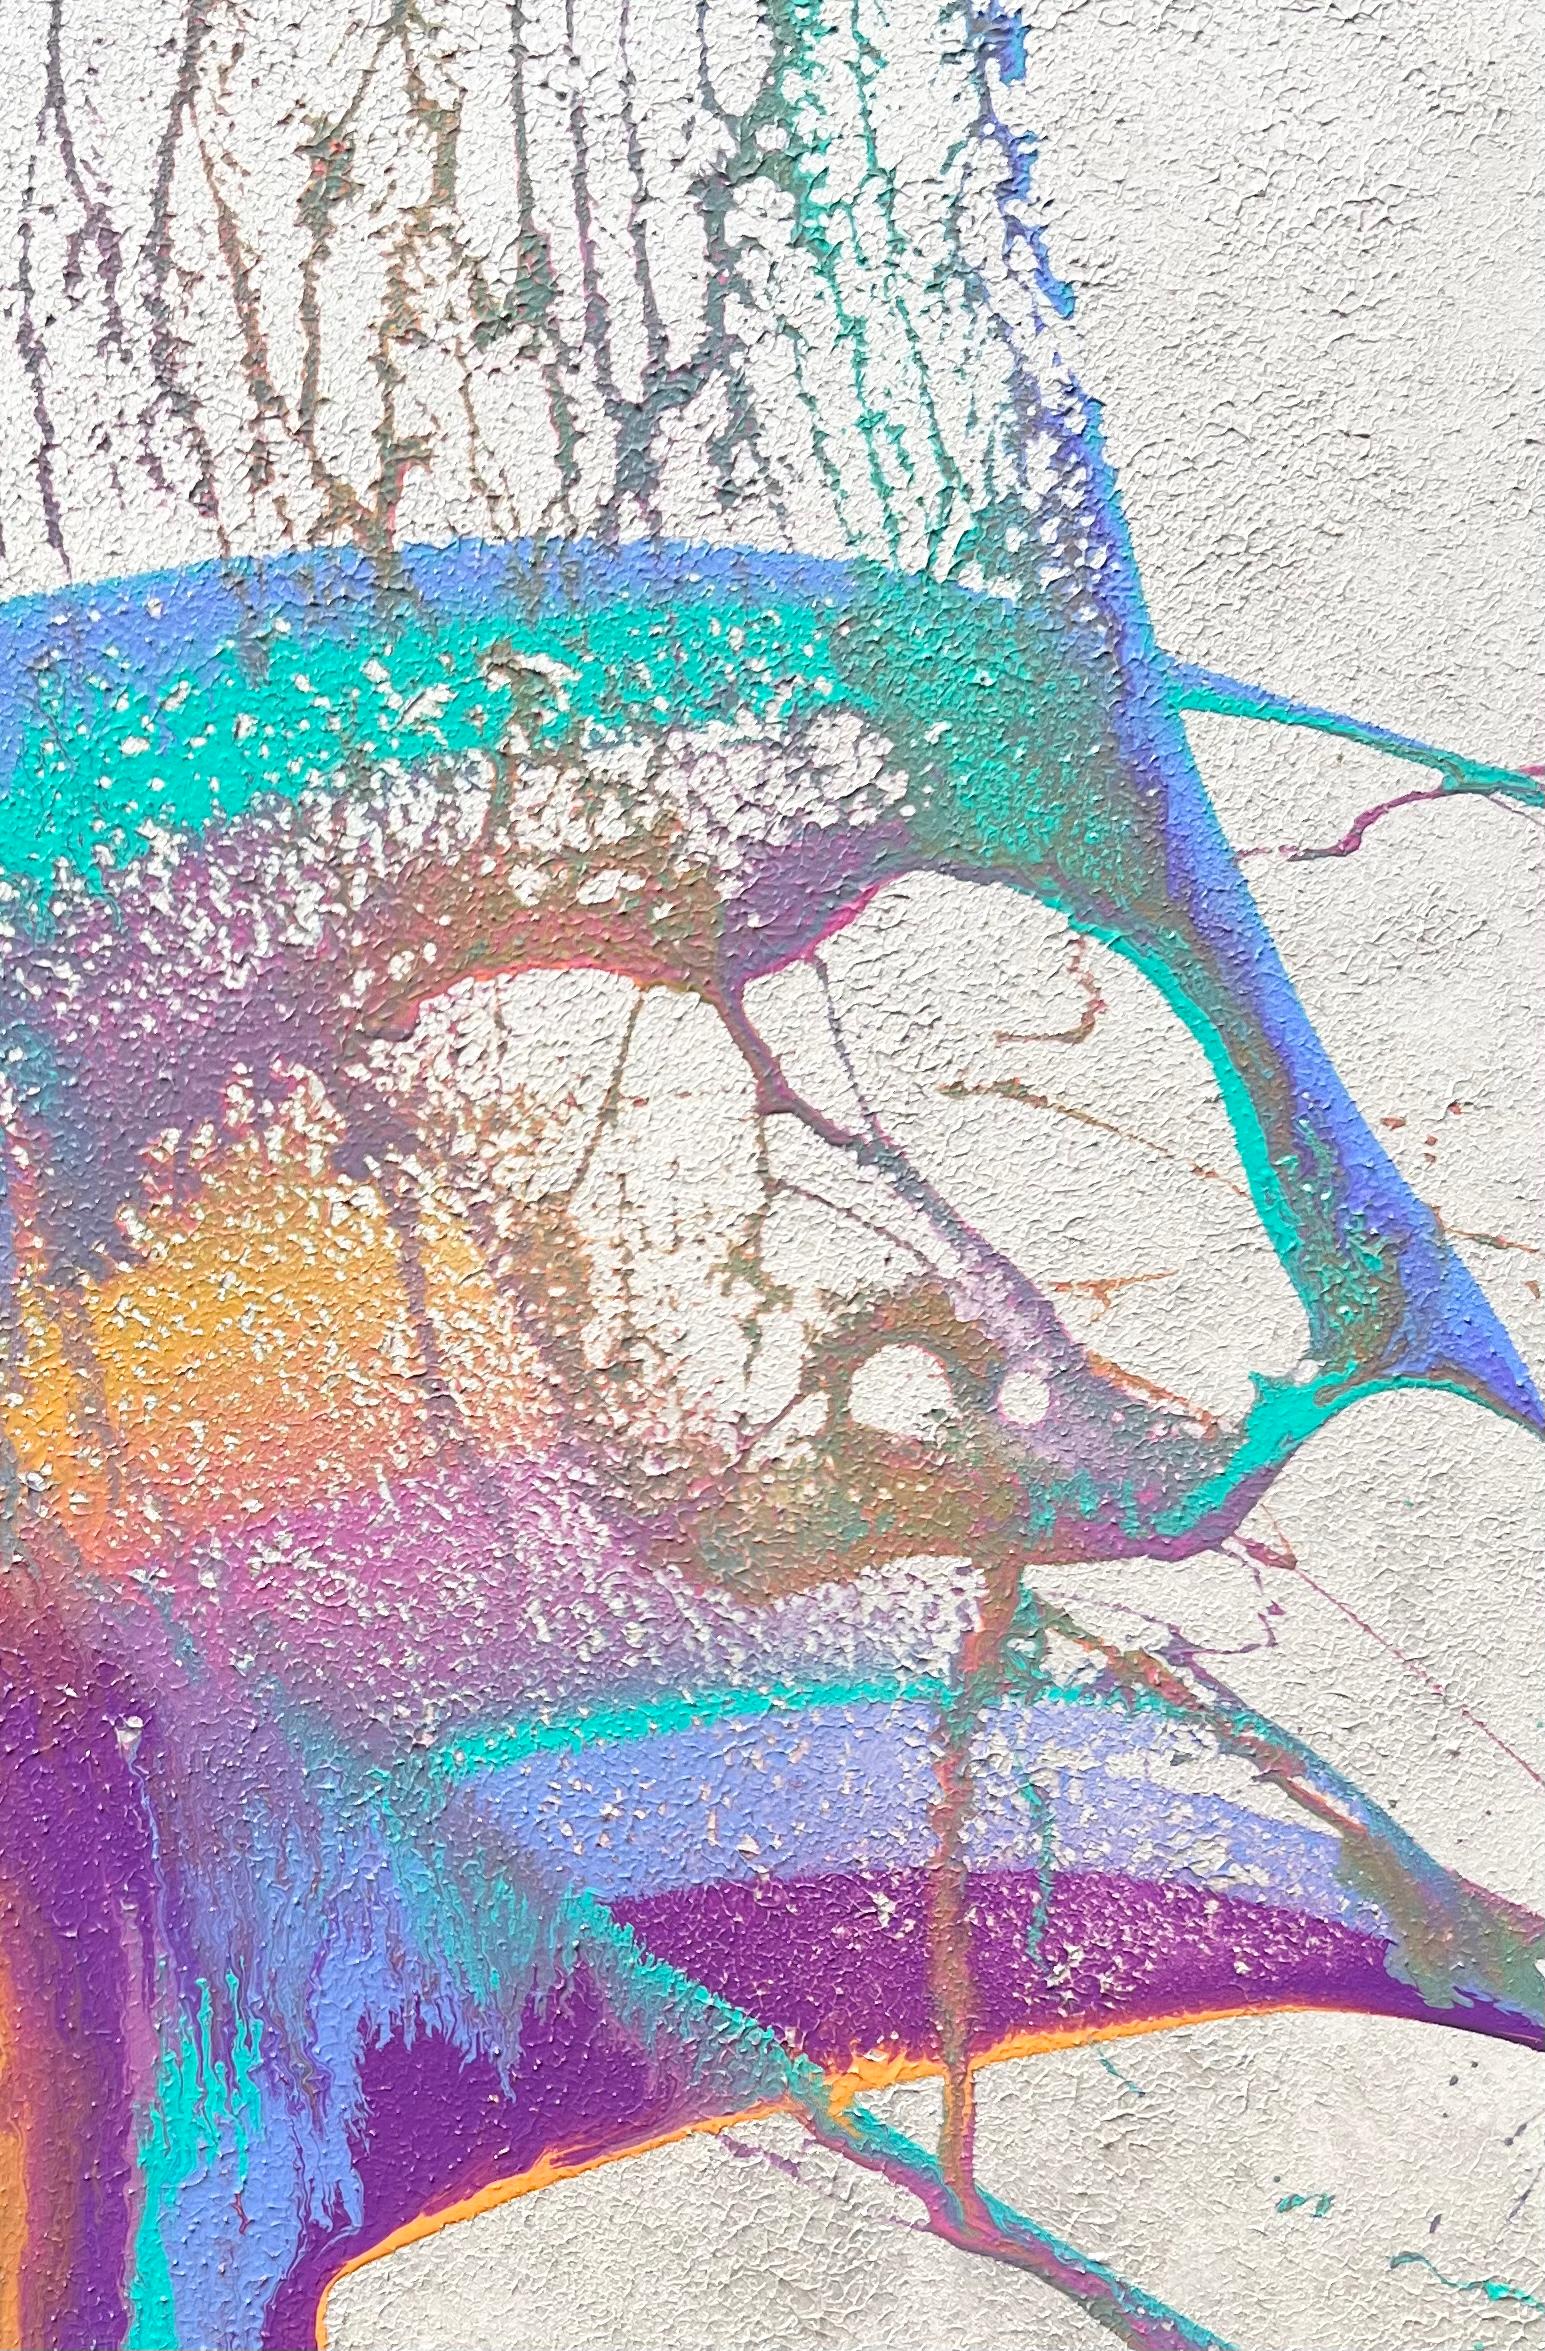 <p>Commentaires de l'artiste<br>L'artiste Eric Wilson présente une pièce coulée spontanée en acrylique avec un fond irisé nacré. De vives teintes turquoise se déclinent en cascade dans un spectre de violet, de rose et de jaune. En terminant cette